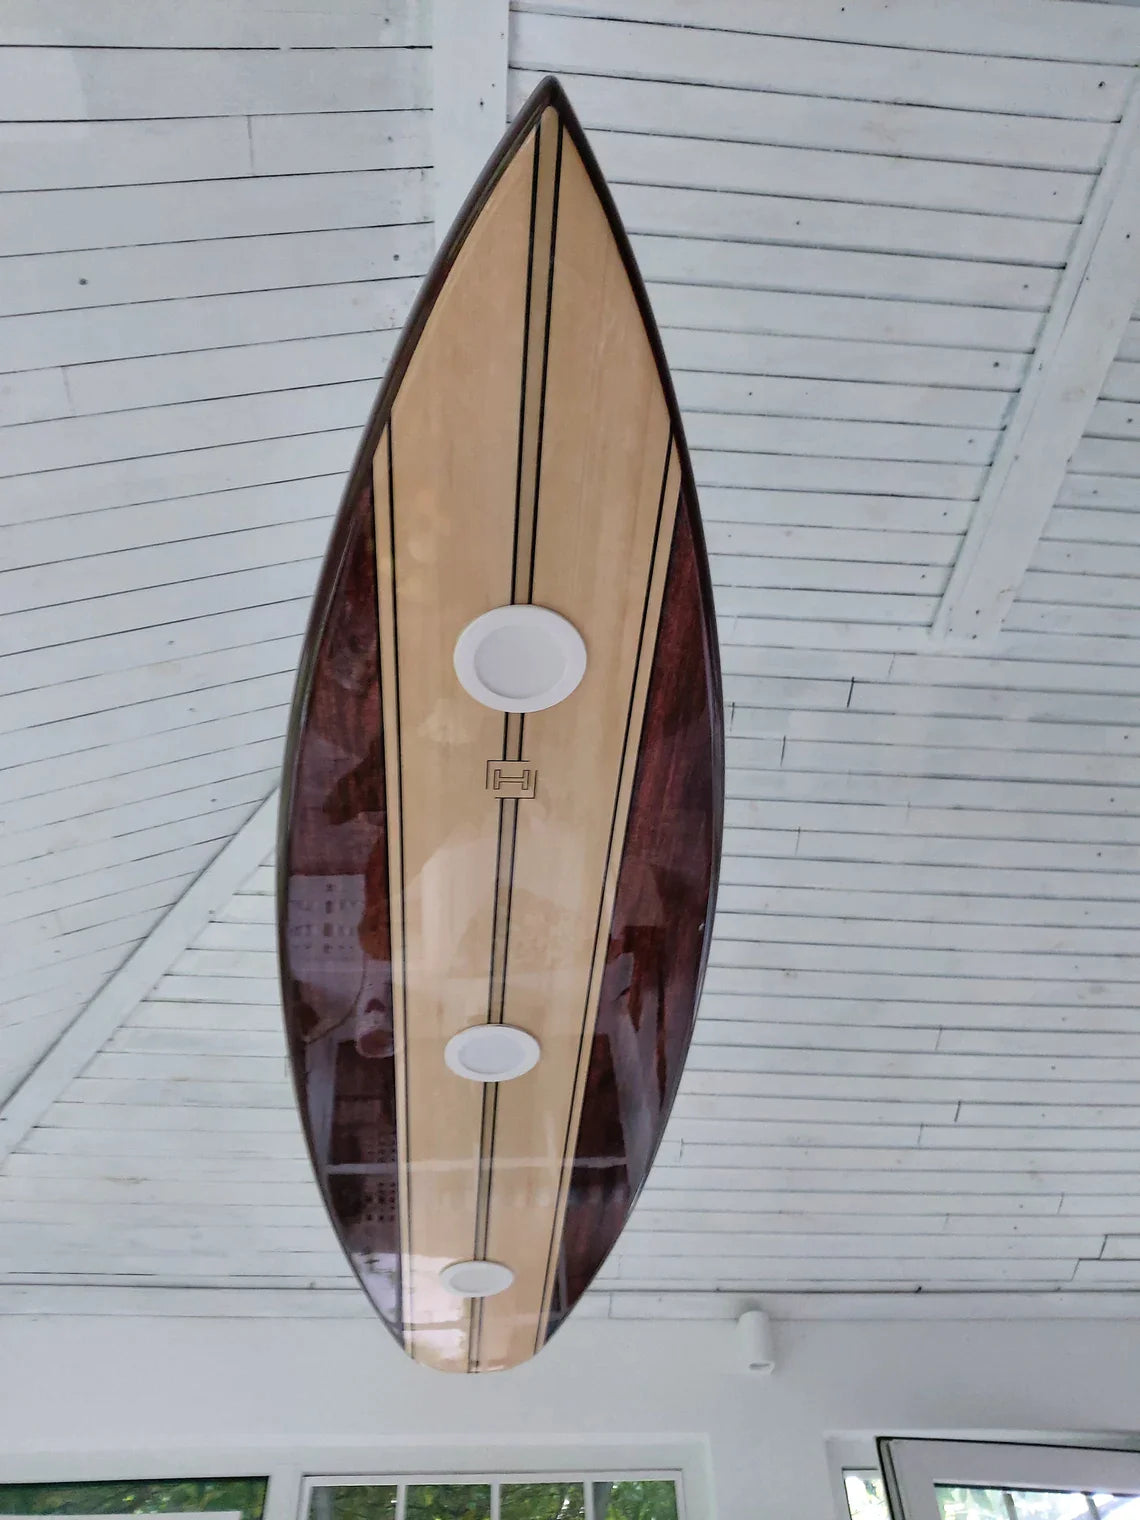 50 inch Surfboard Shaped Ceiling Chandelier - Pool Billiard Table Light